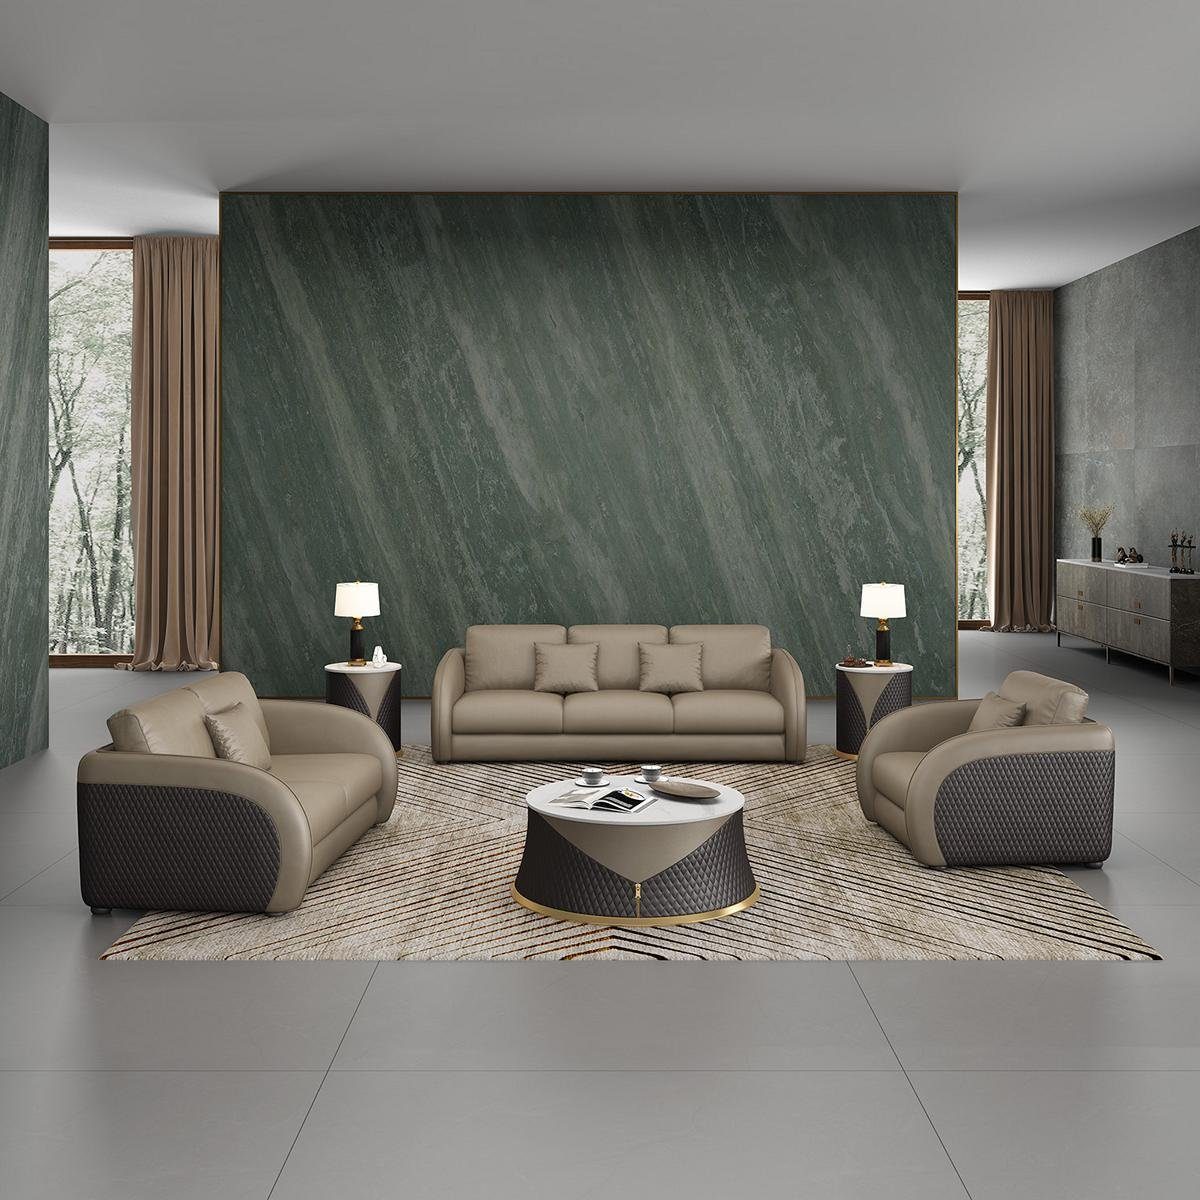 1 Grau/Schwarz Polster Couchen Wohnzimmer-Set, Couch Design 3 2 Sofa Sitzer JVmoebel Sofagarnitur Set